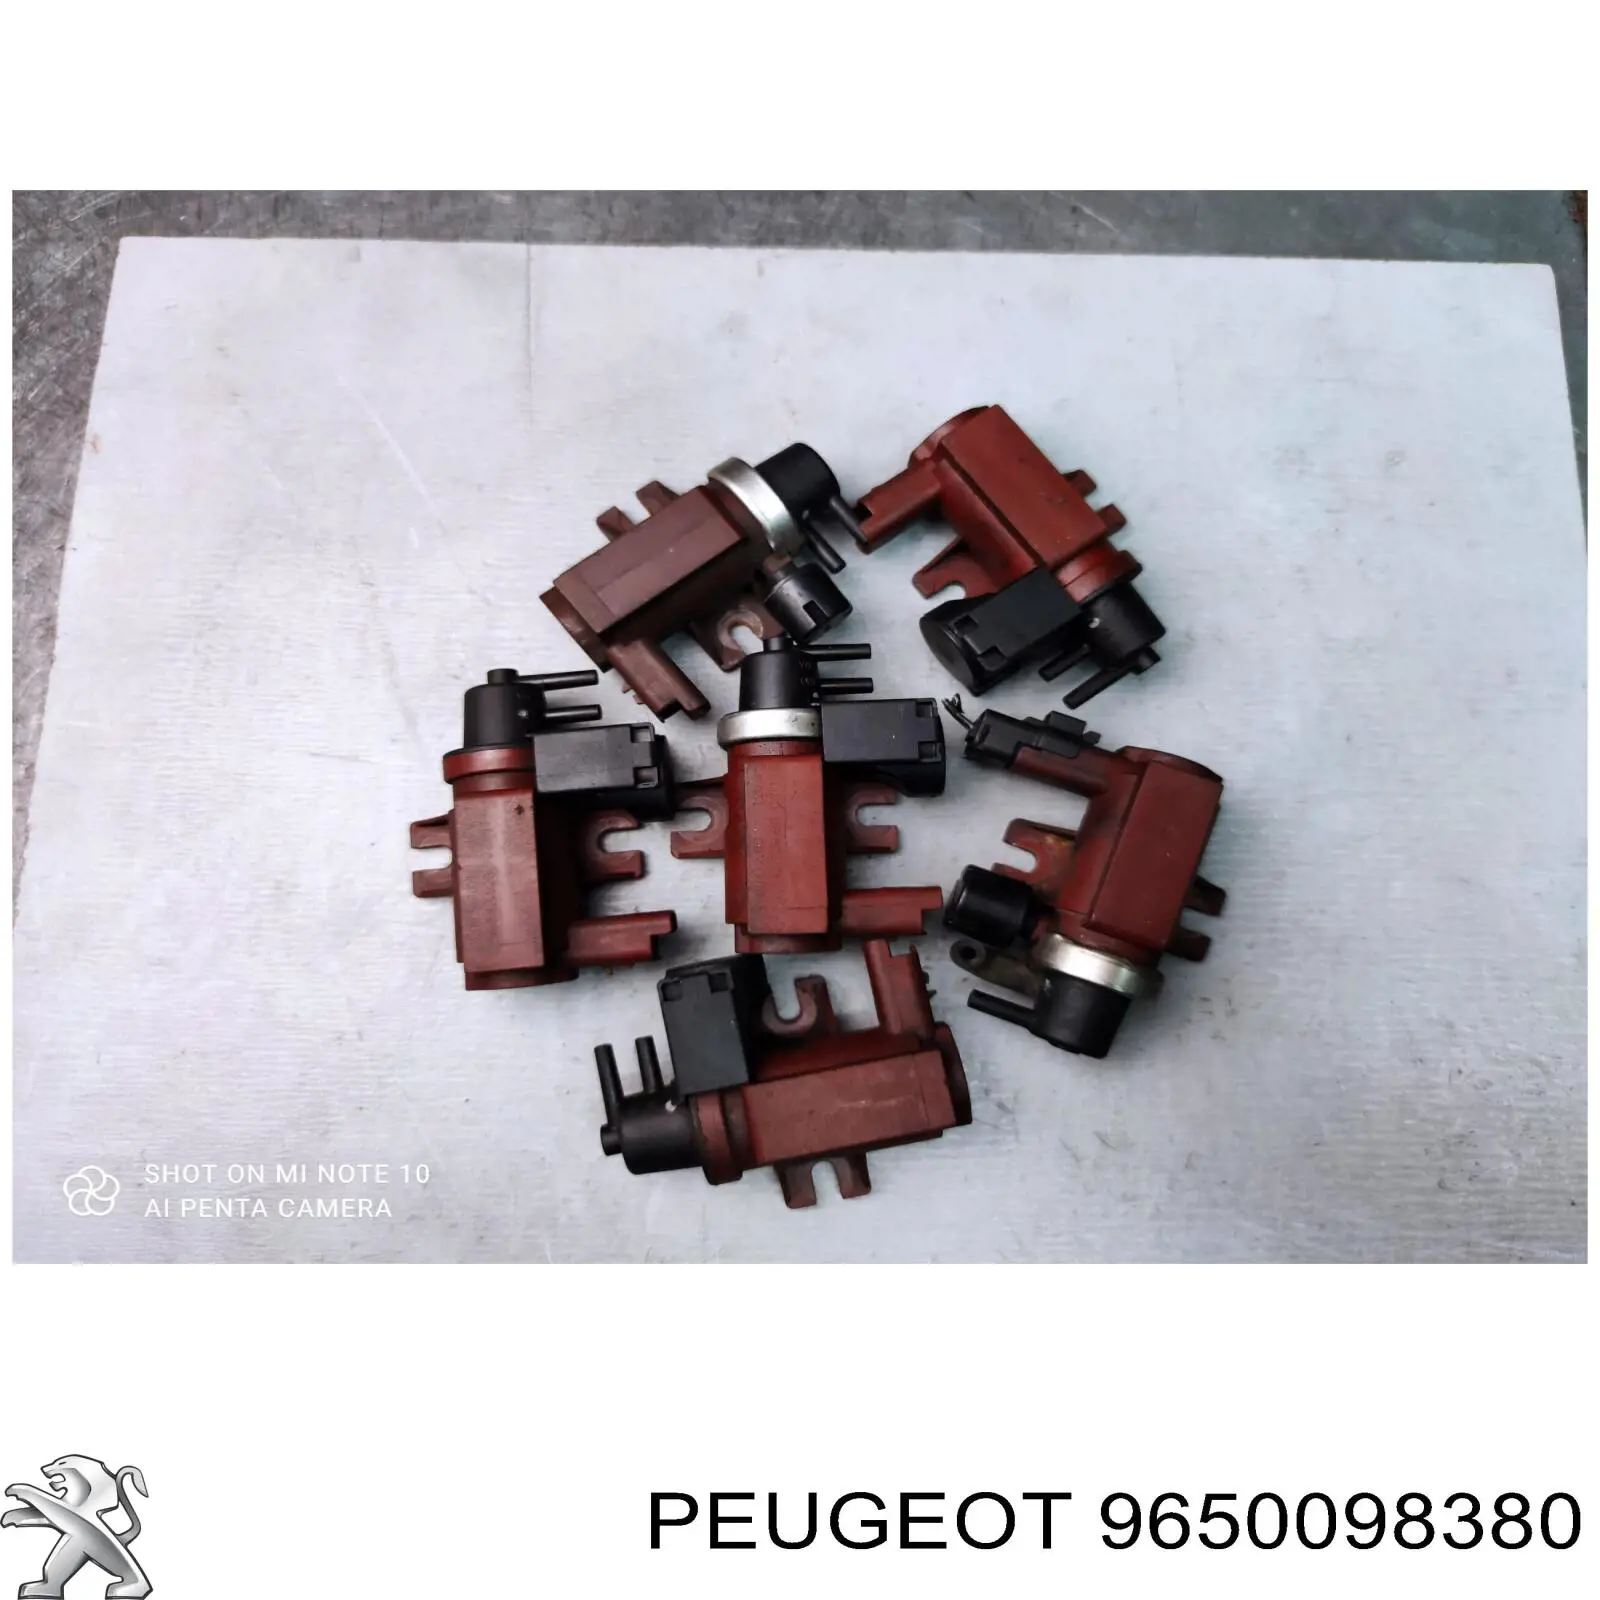 9650098380 Peugeot/Citroen valvula de solenoide control de compuerta egr